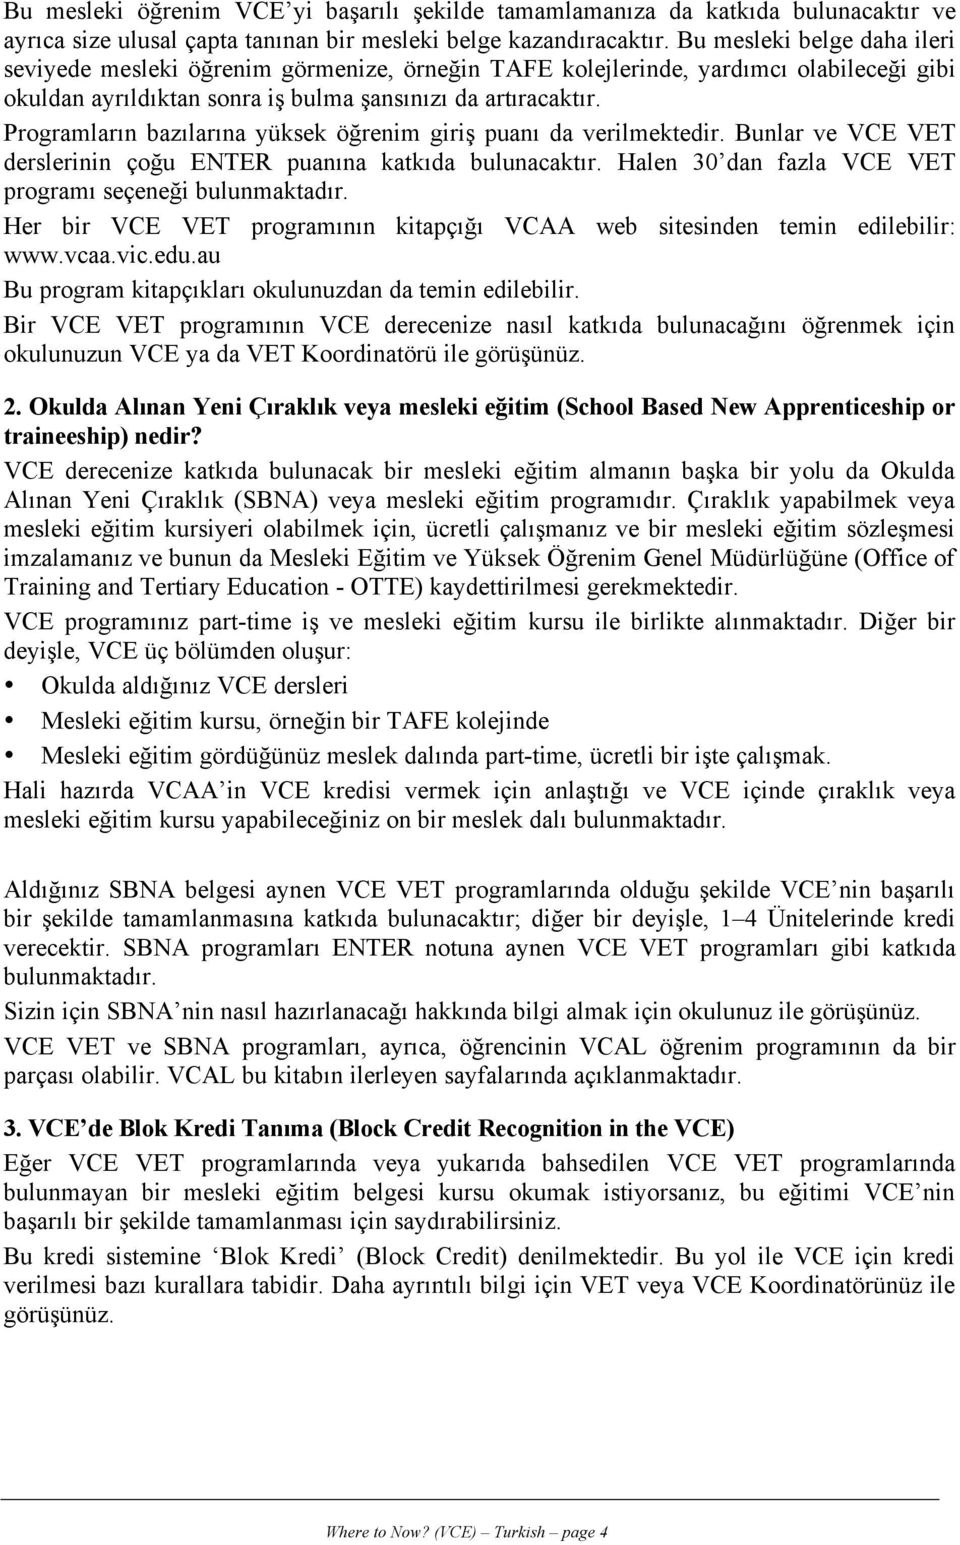 Programların bazılarına yüksek öğrenim giriş puanı da verilmektedir. Bunlar ve VCE VET derslerinin çoğu ENTER puanına katkıda bulunacaktır. Halen 30 dan fazla VCE VET programı seçeneği bulunmaktadır.